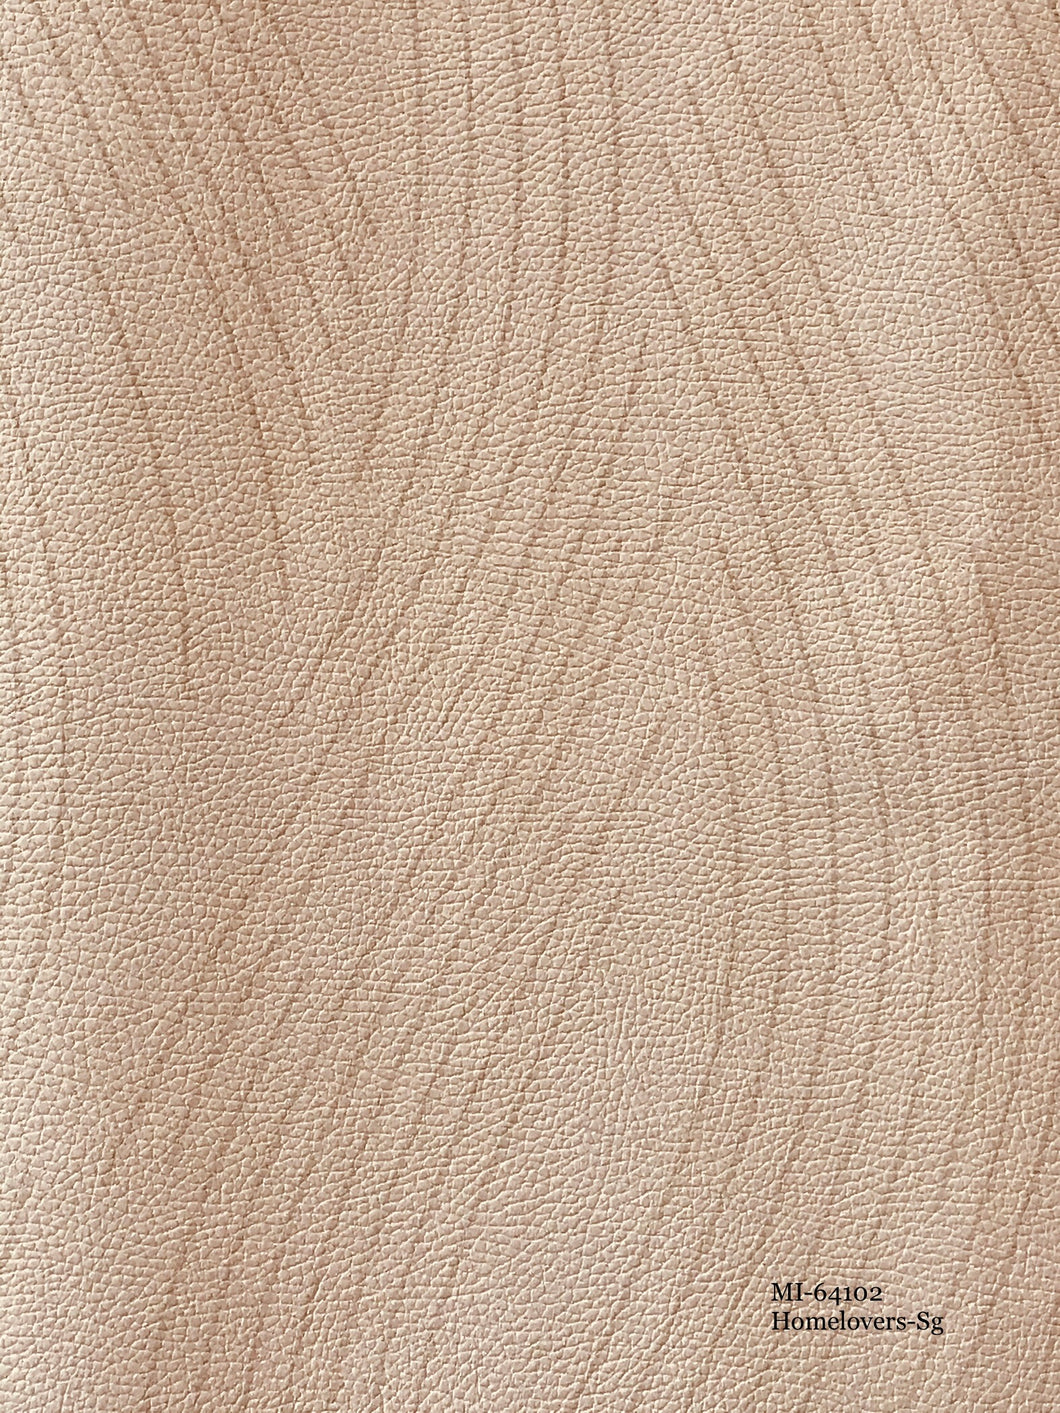 leather effect wavy lines wallpaper im-64102 (4 colourways) mi-64102 cream